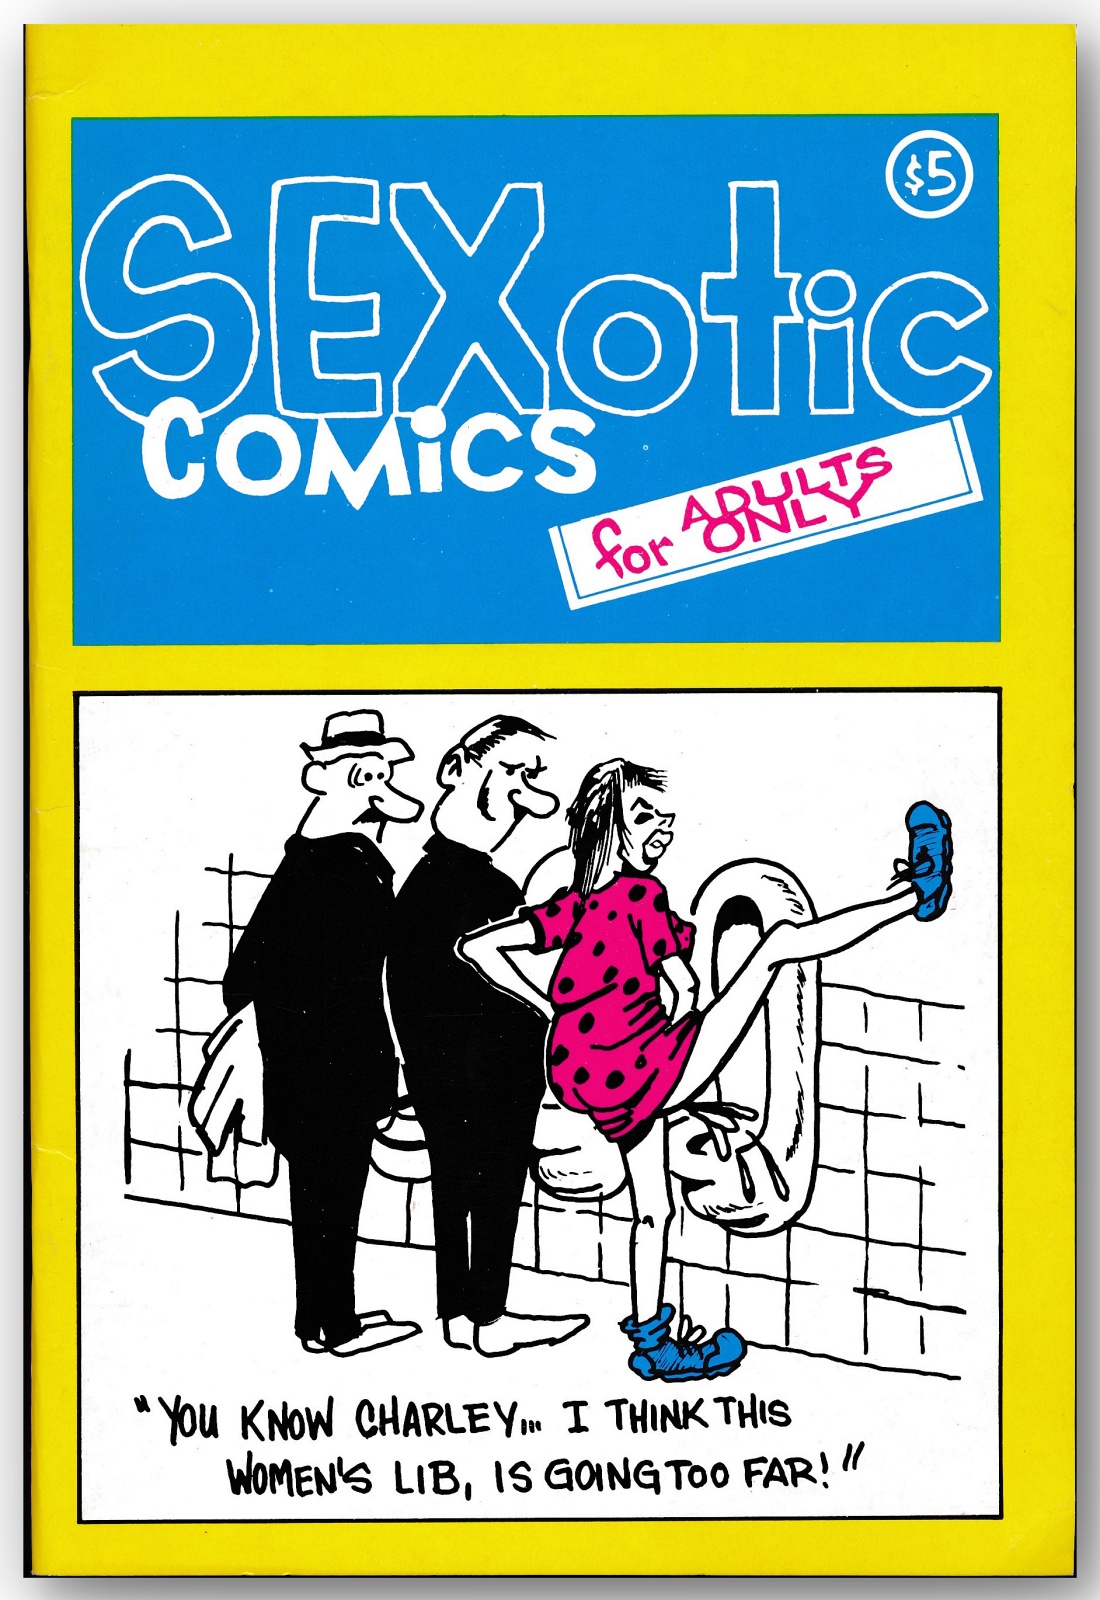 Sexotic comics